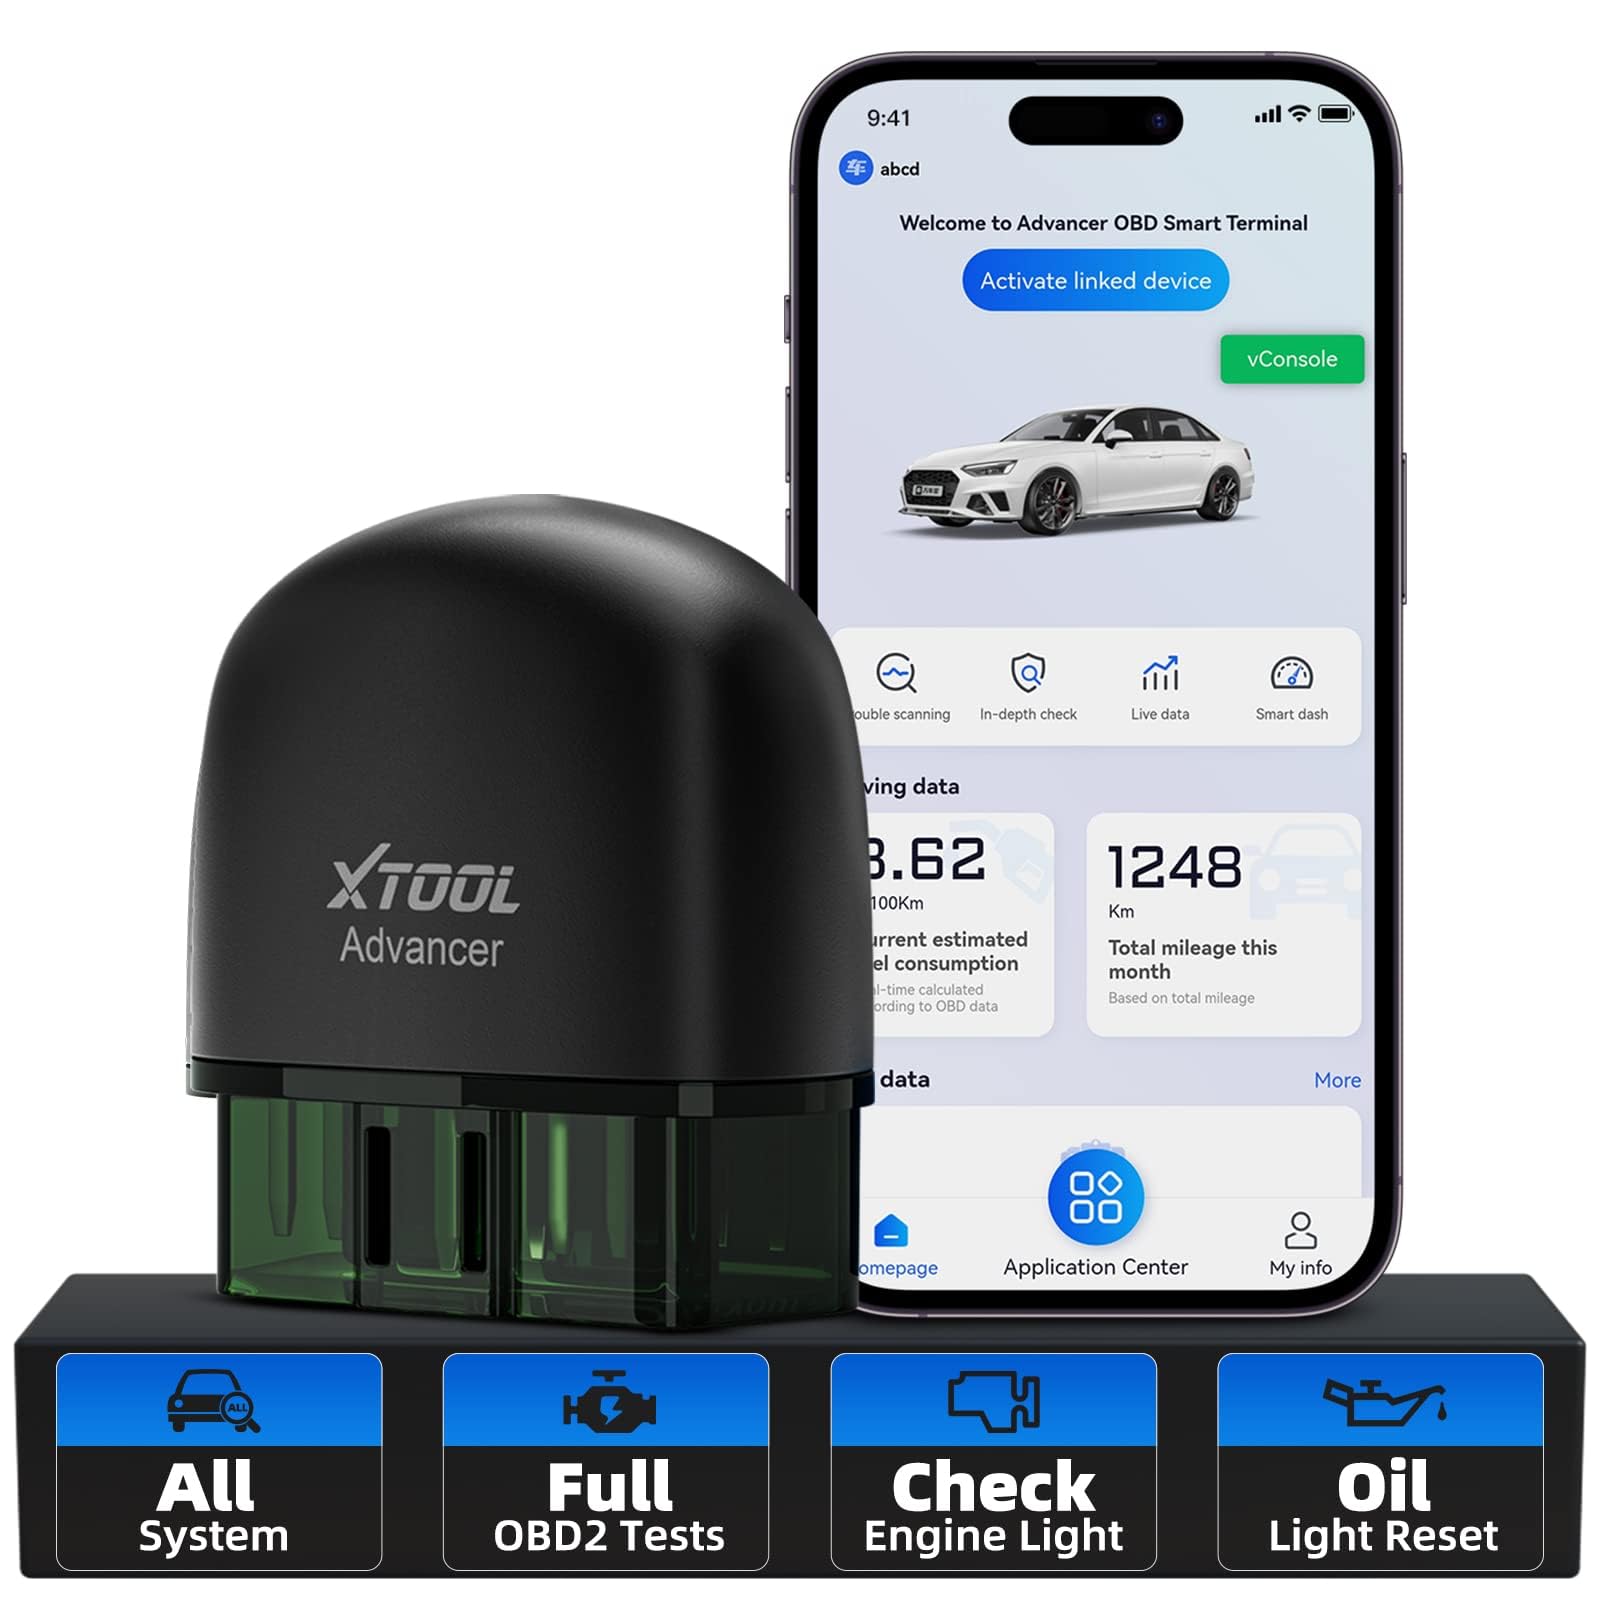 XTOOL AD20 Pro obd2 diagnosegerät, kabelloser Auto-Diagnosescanner mit vollständigem Systemscan, Öl-Reset, Leistungstest, Motorfehlercodeleser für iOS und Android, lebenslanges kostenloses Update von XTOOL